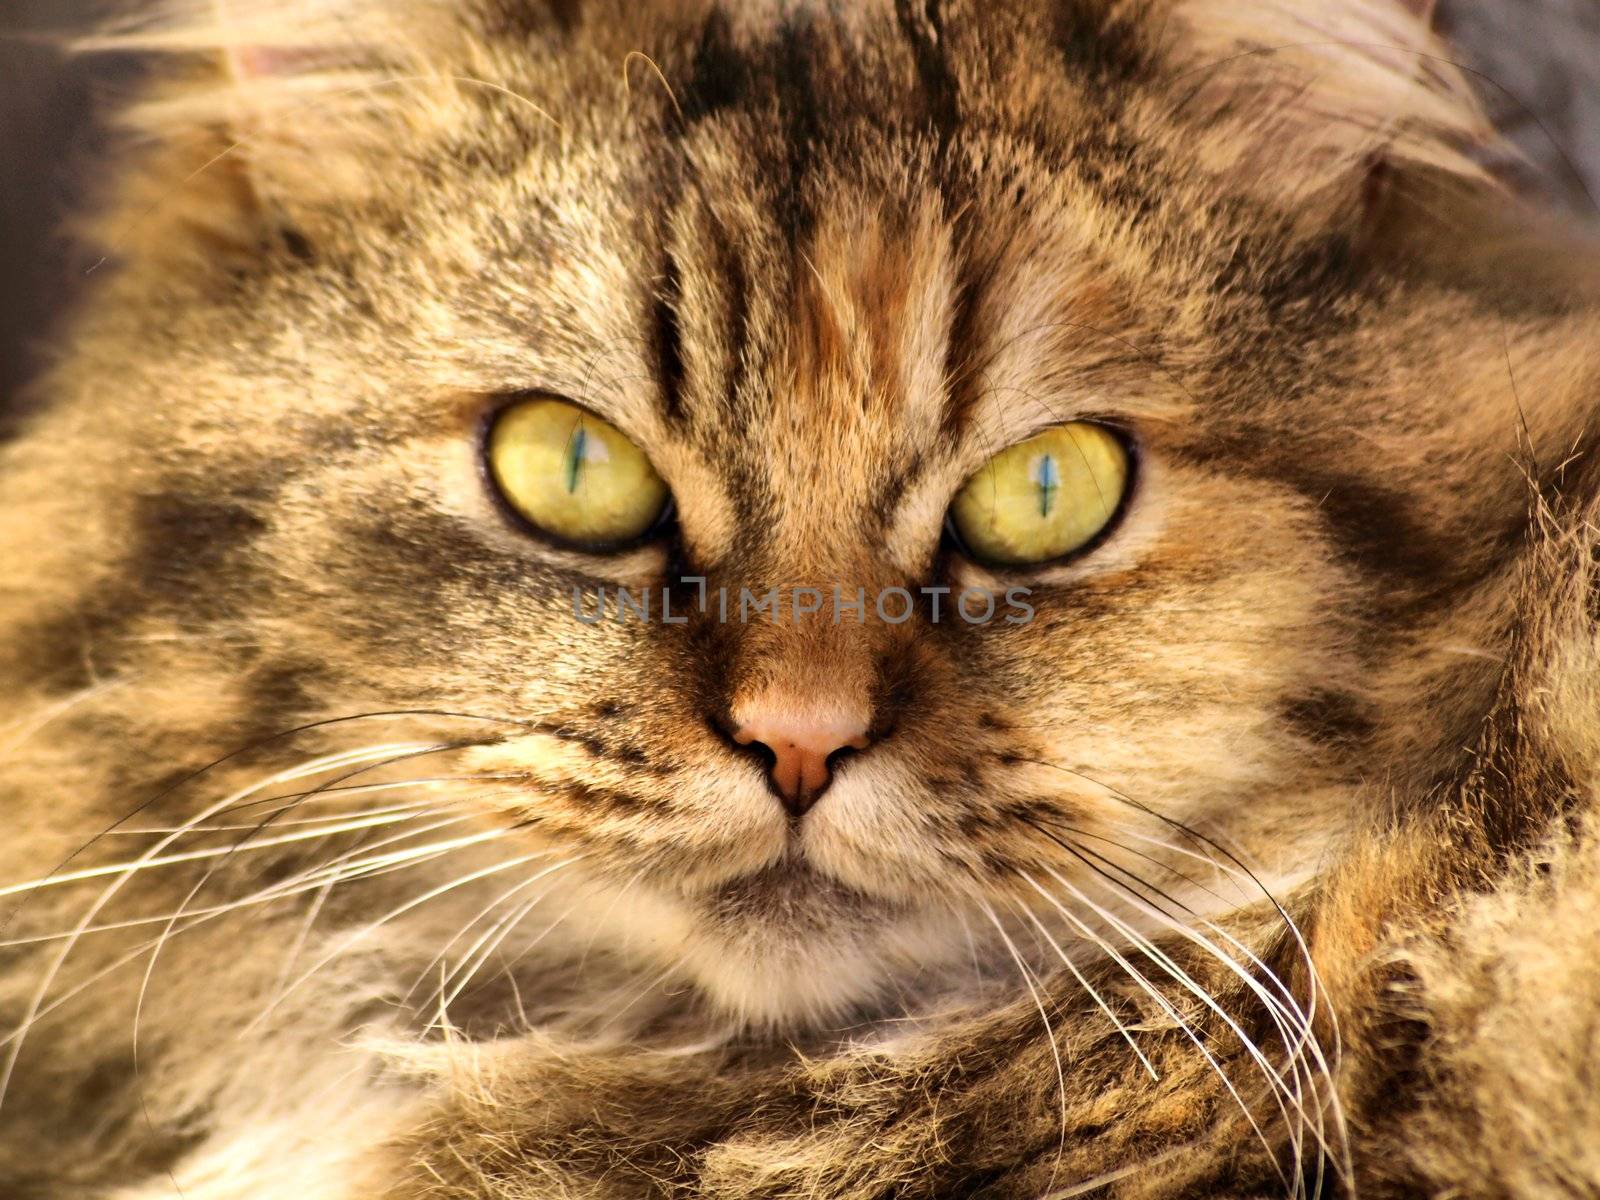 kitty portrait by jbouzou